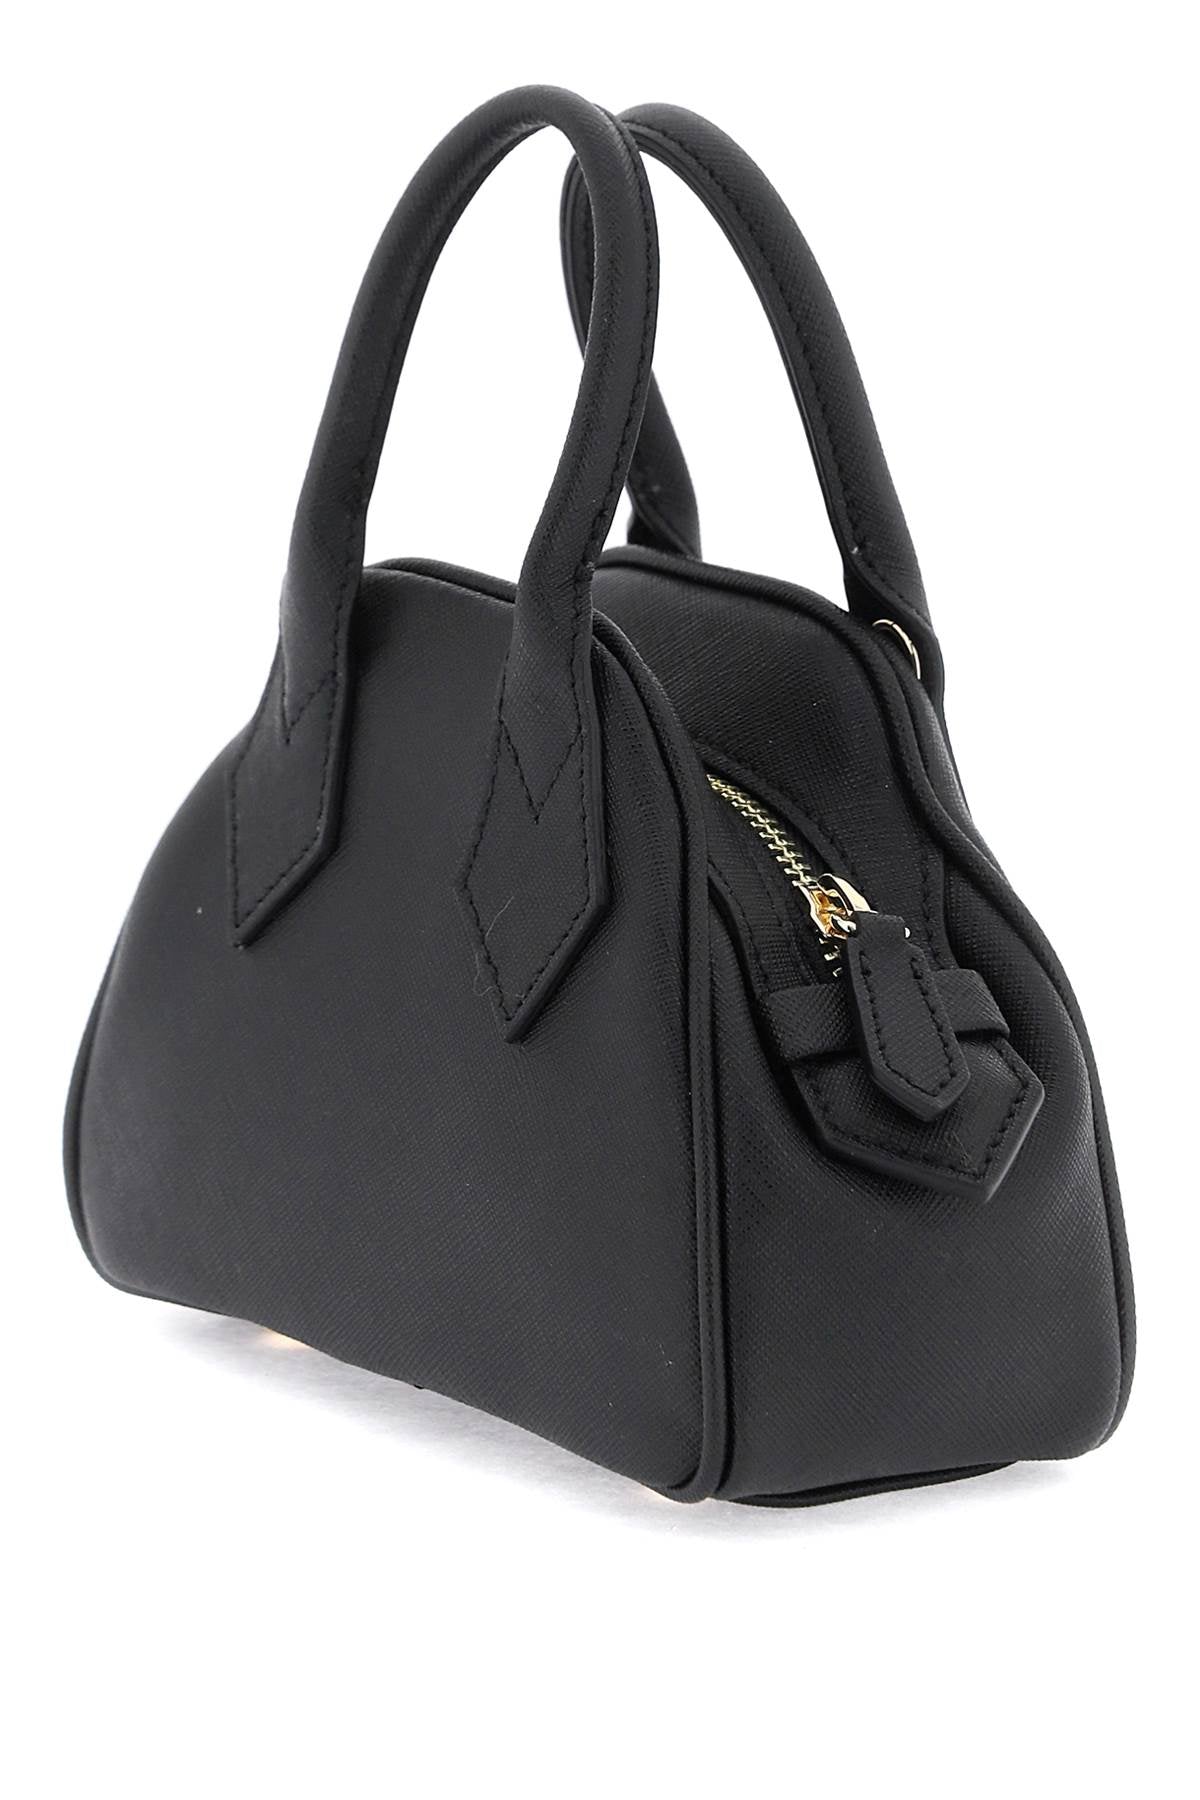 Vivienne Westwood yasmine mini bag - Black